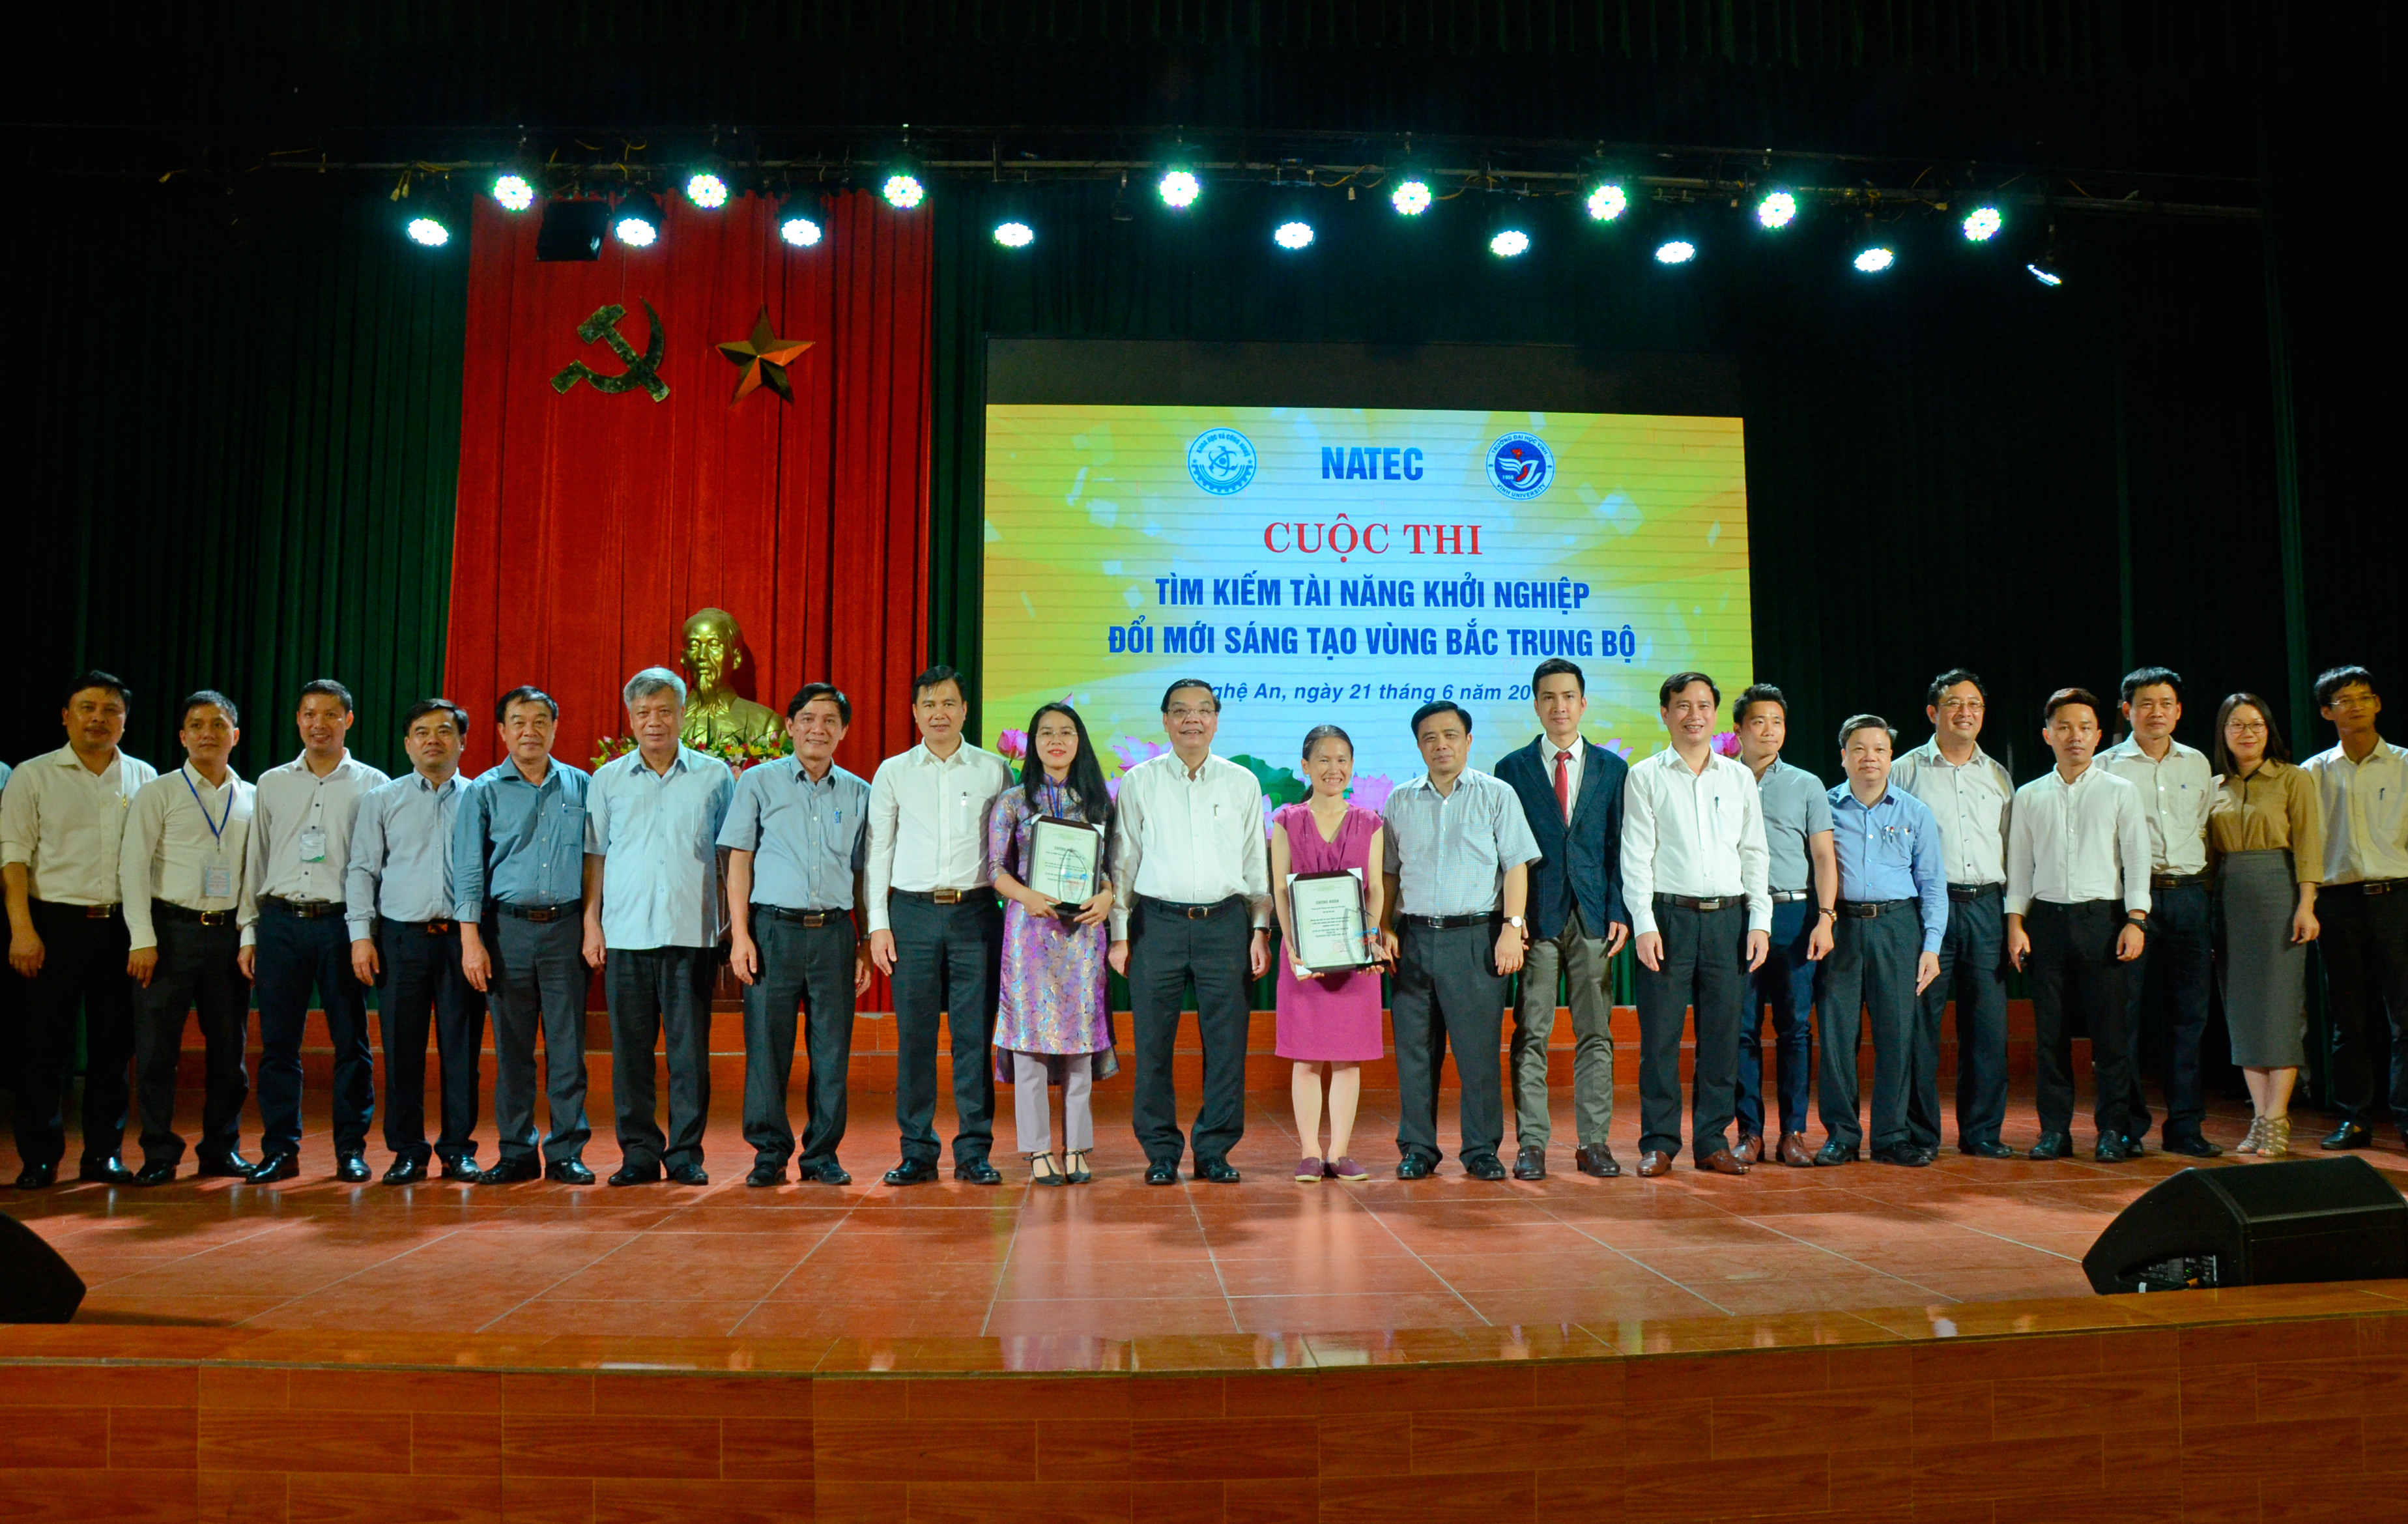 Cuộc thi thu hút 30 ý tưởng dự án khởi nghiệp đến từ 6 tỉnh vùng Bắc Trung bộ. Ảnh Thanh Lê